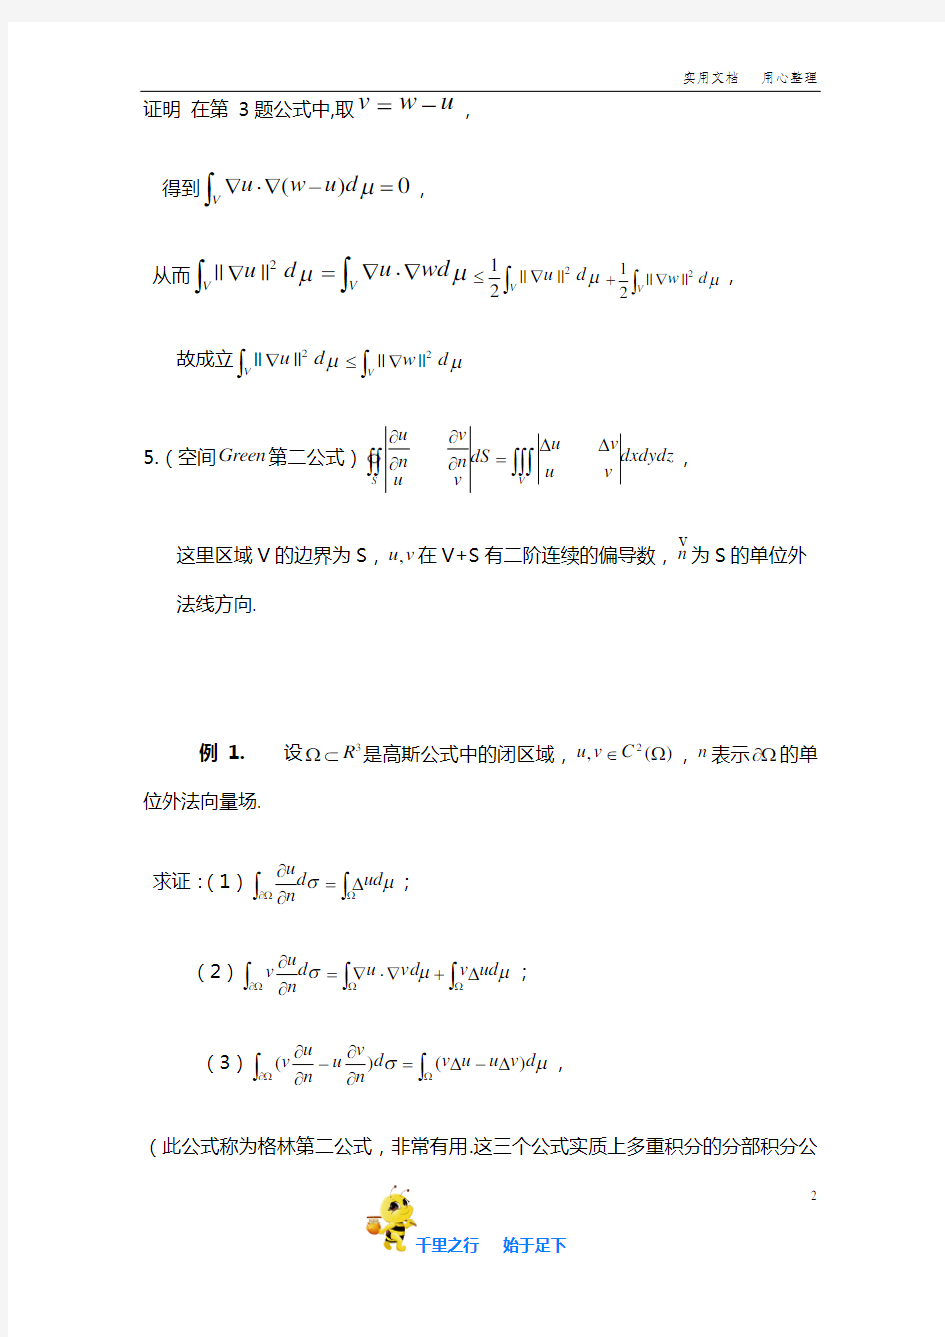 高斯公式和格林公式的运用分部积分法